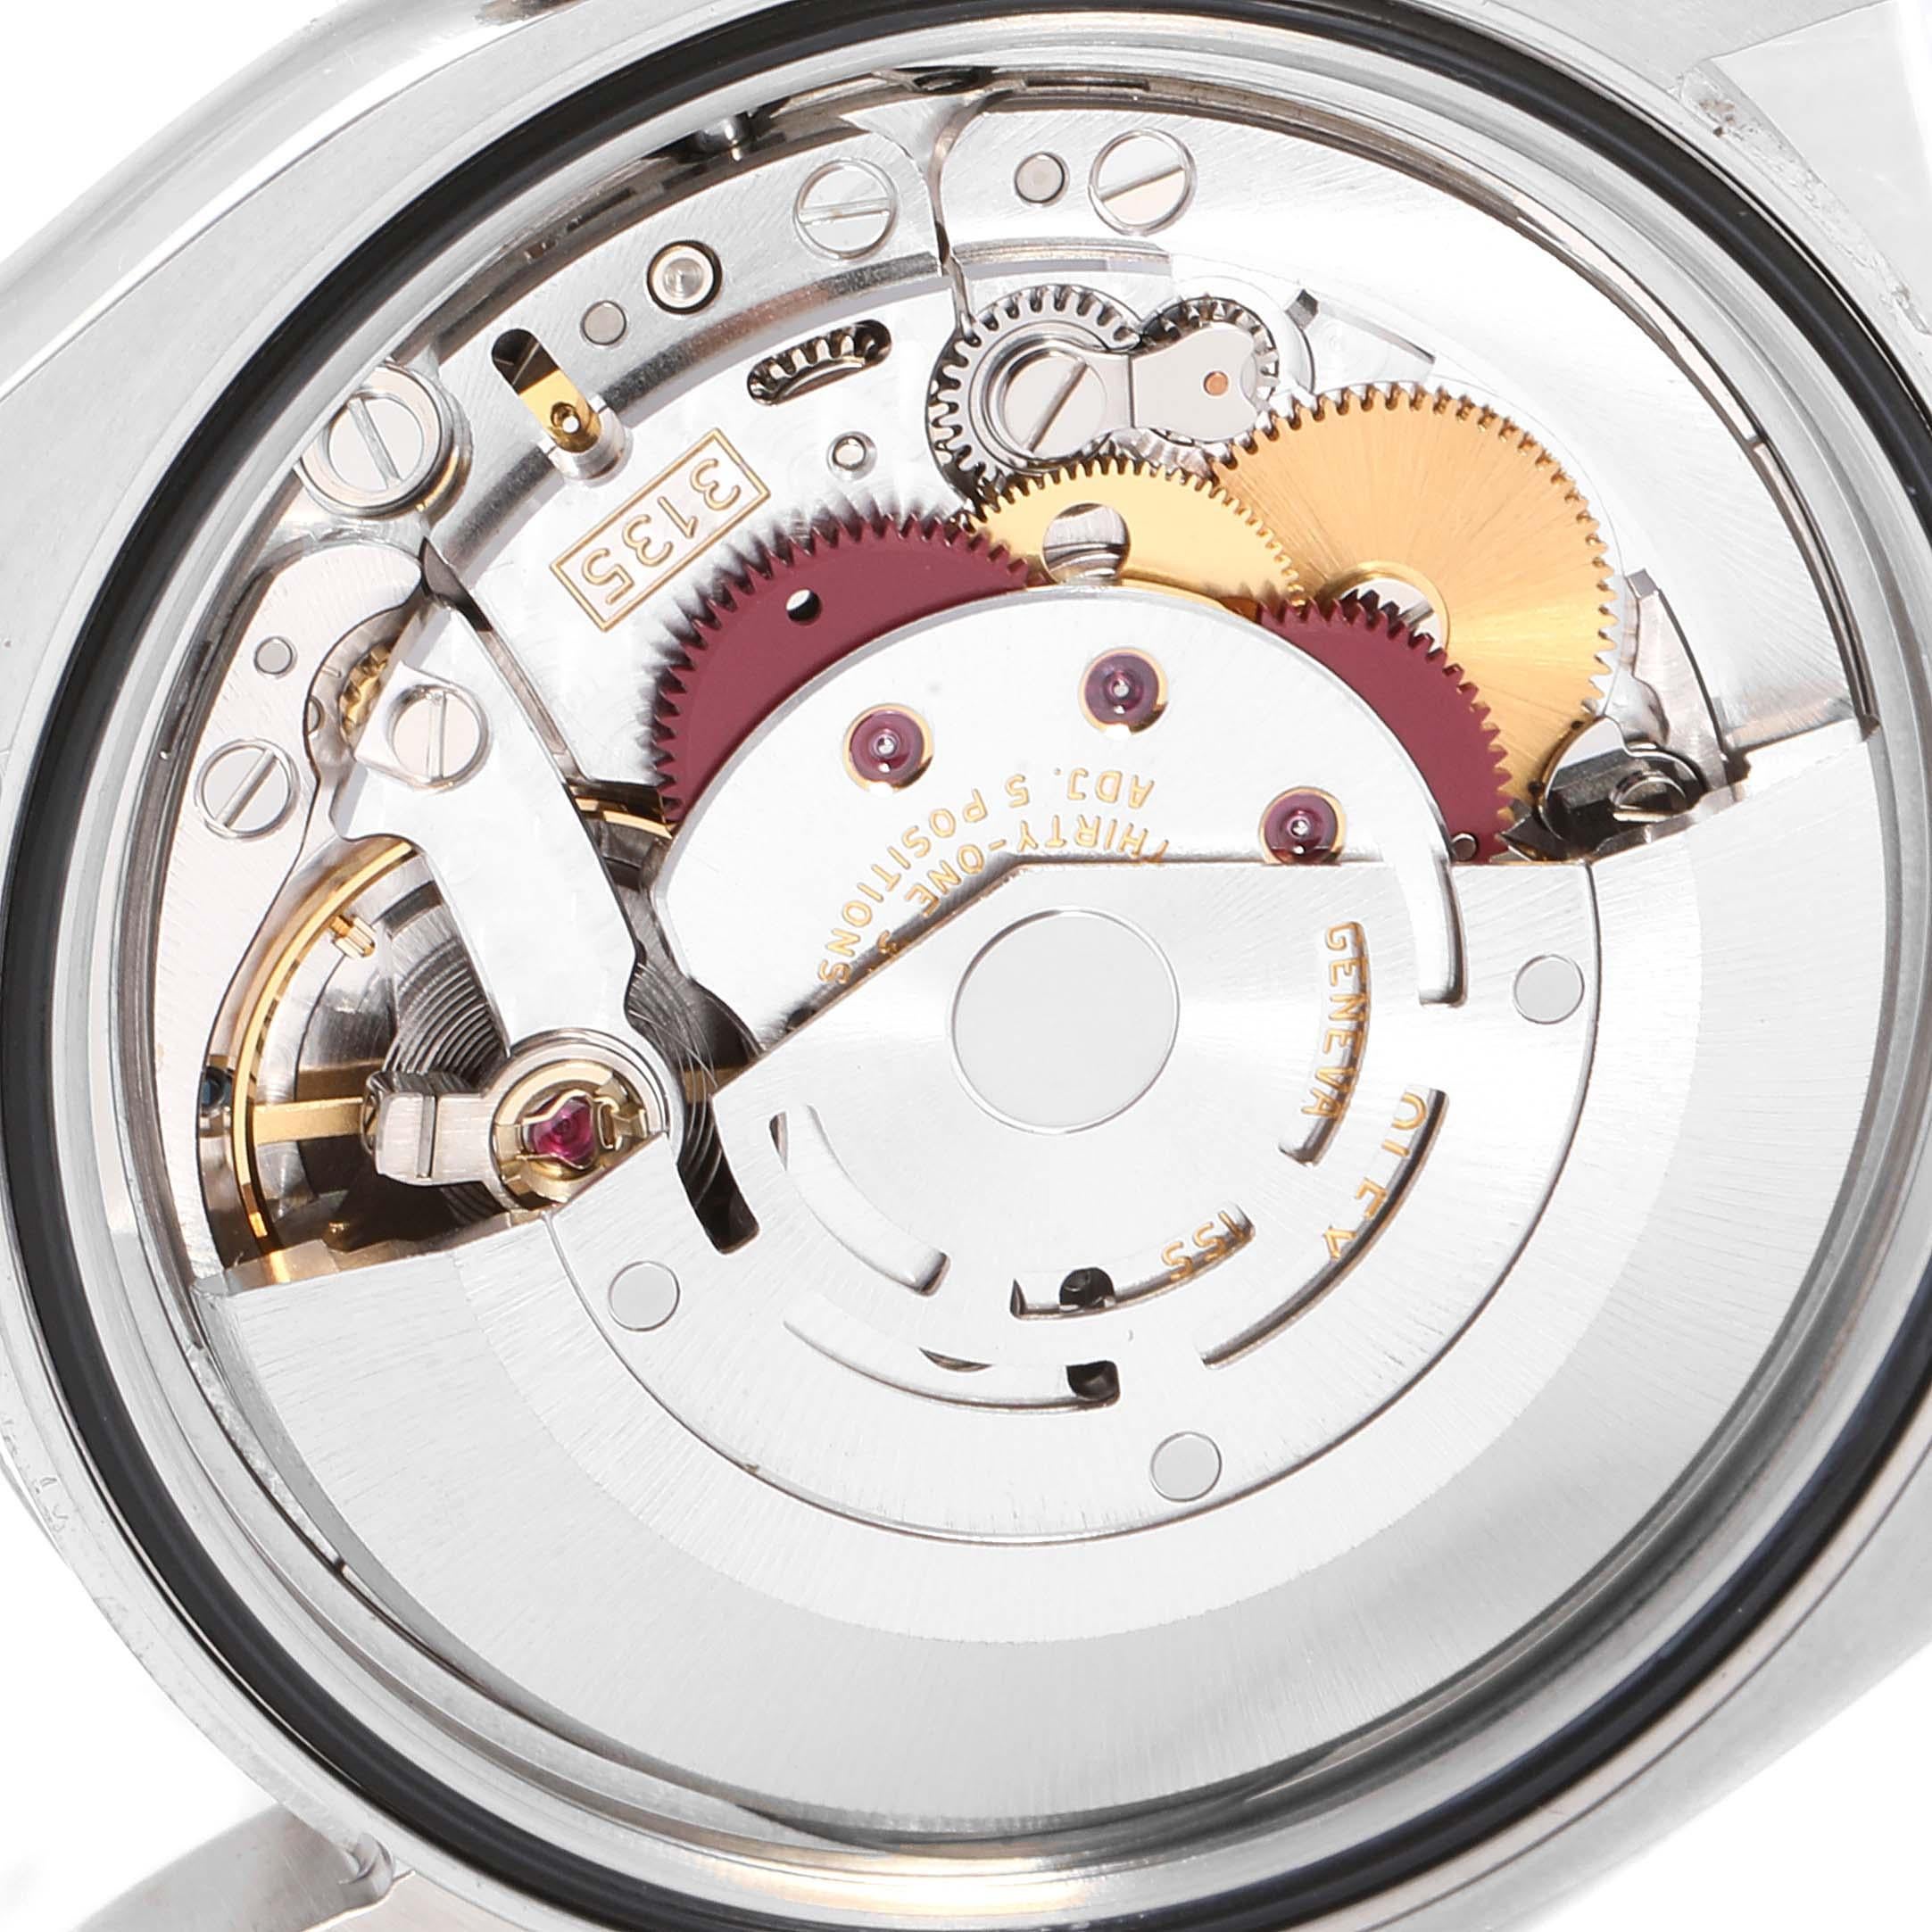 Rolex Datejust Steel White Gold Jubilee Bracelet Watch 116234 For Sale 4